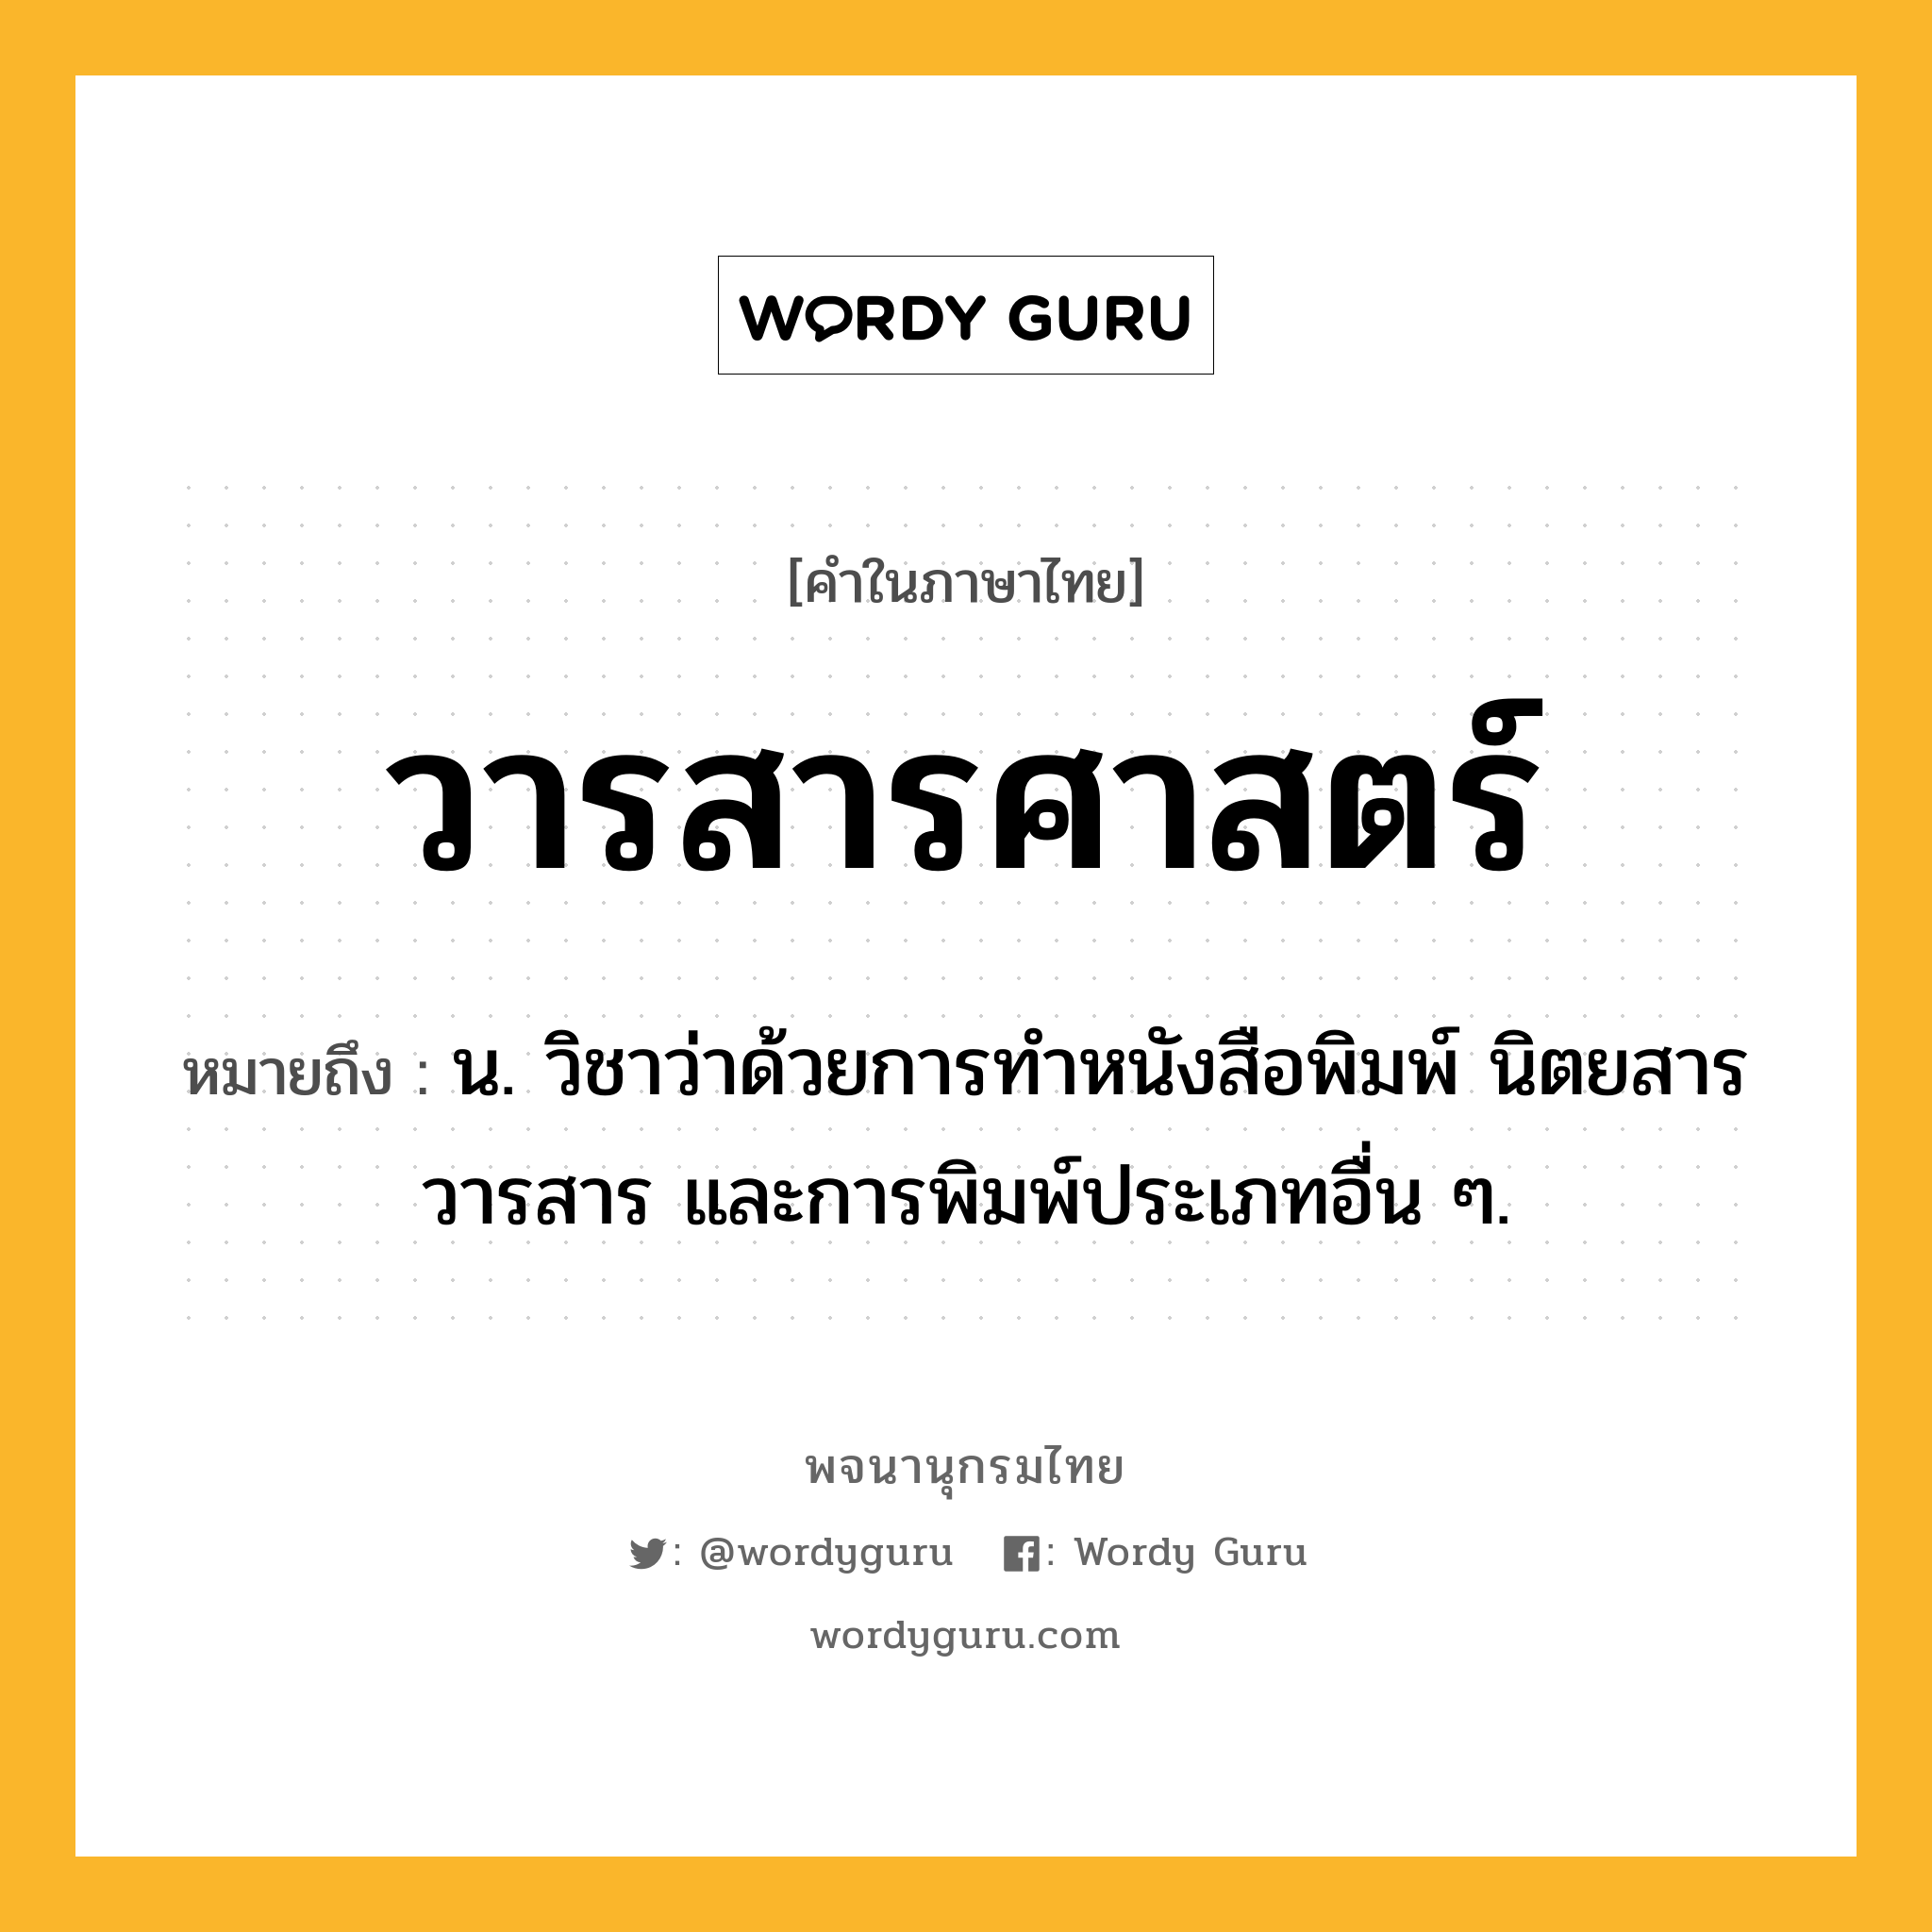 วารสารศาสตร์ หมายถึงอะไร?, คำในภาษาไทย วารสารศาสตร์ หมายถึง น. วิชาว่าด้วยการทําหนังสือพิมพ์ นิตยสาร วารสาร และการพิมพ์ประเภทอื่น ๆ.